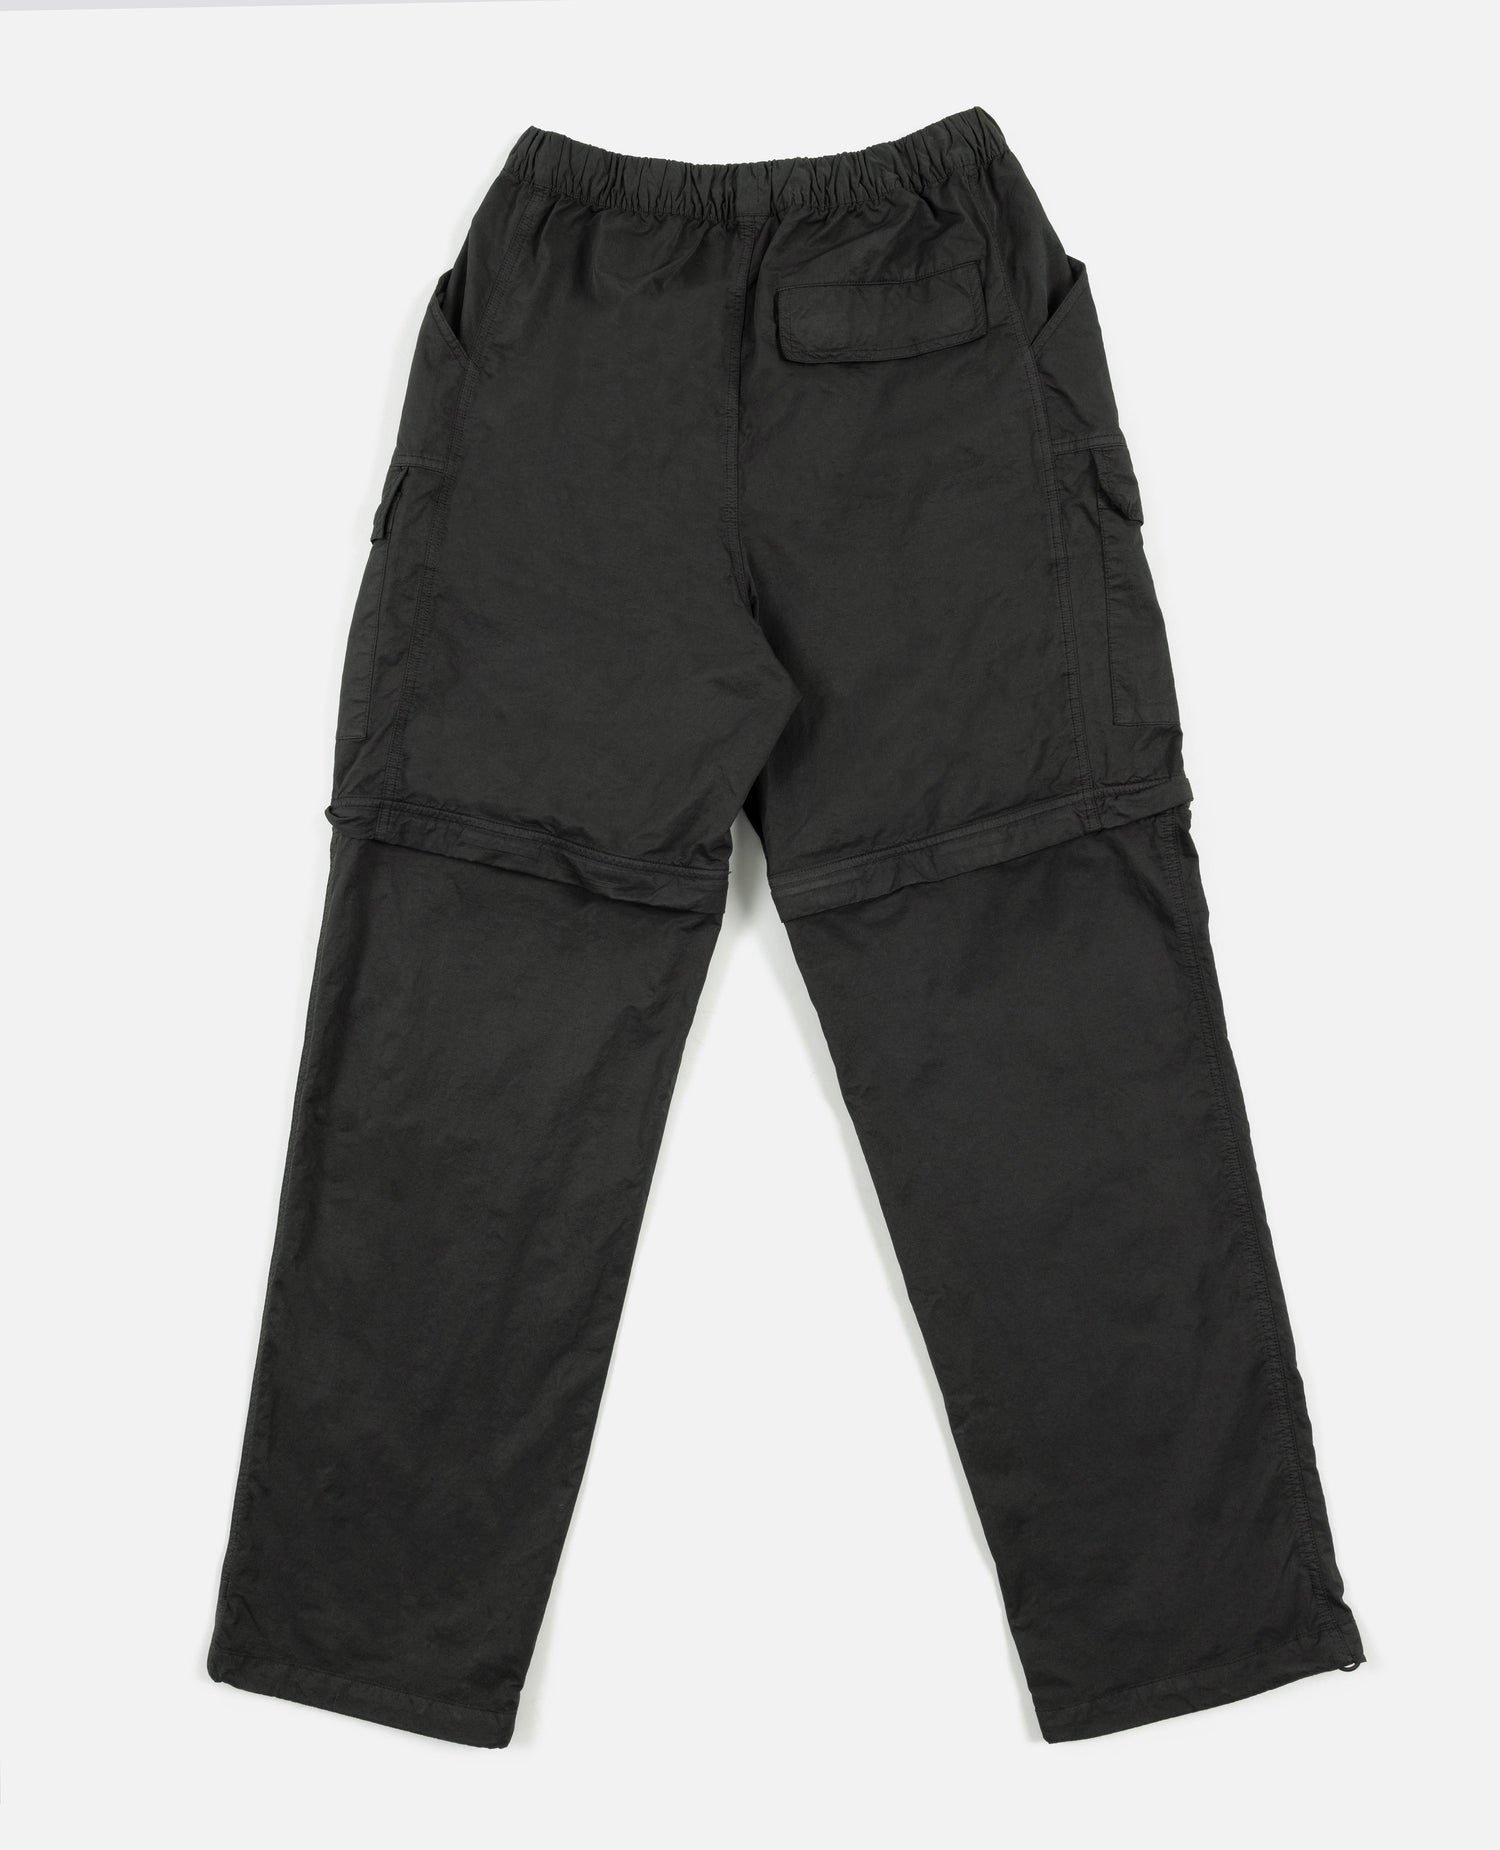 Patta GMT Pigment Dye Nylon Tactical Pants (Pirate Black)